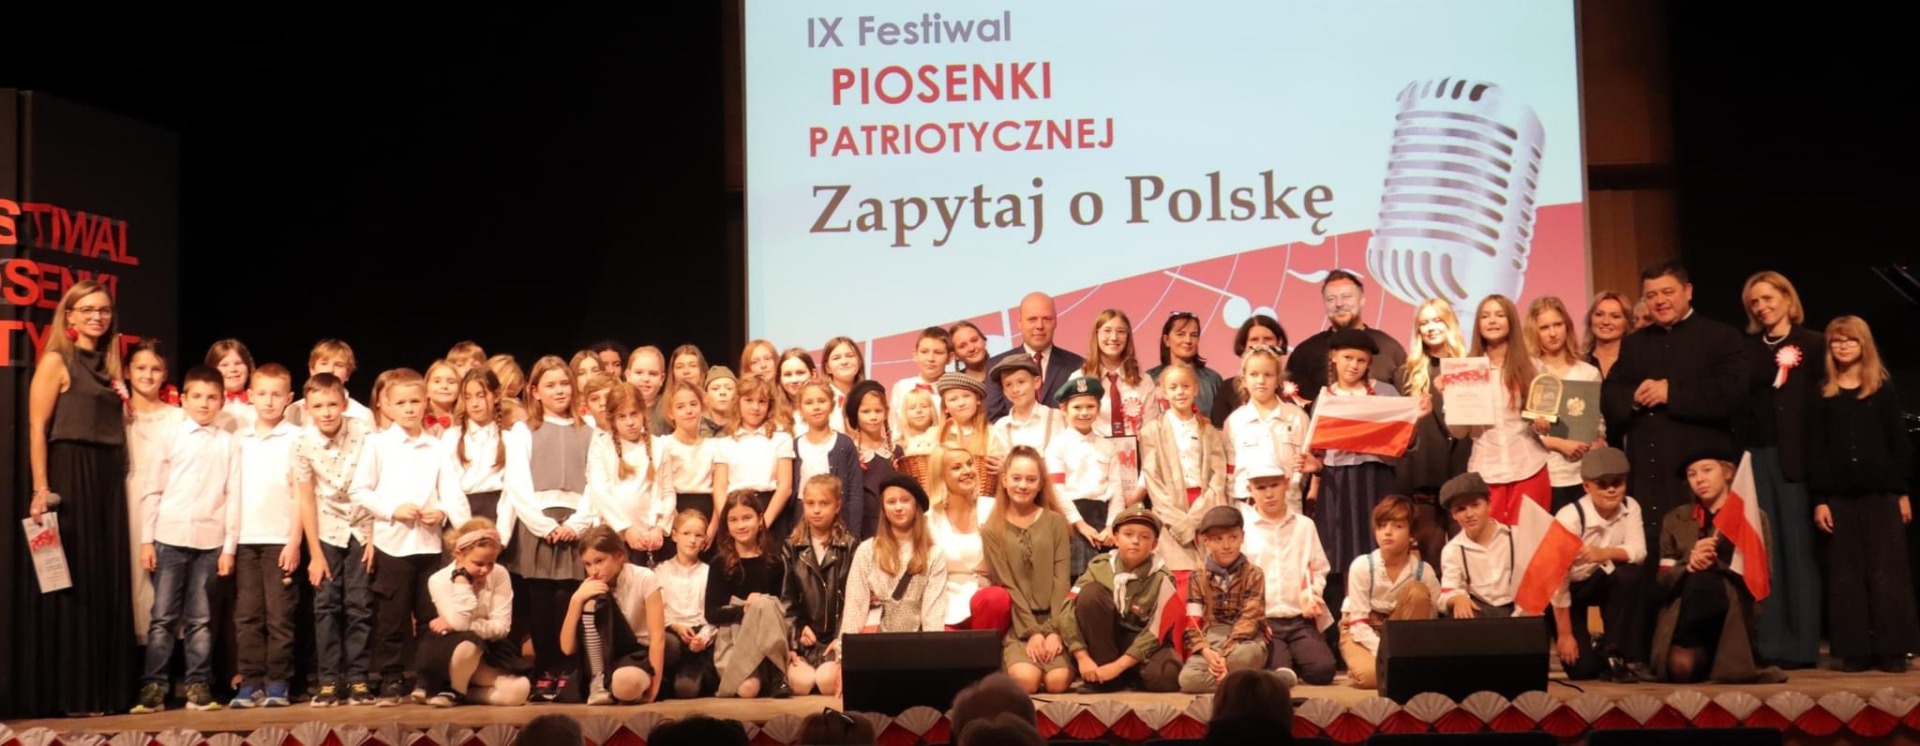 Dzieci na scenie w obecności nauczycieli biorący udział w Festiwalu Pieśni Patriotycznej